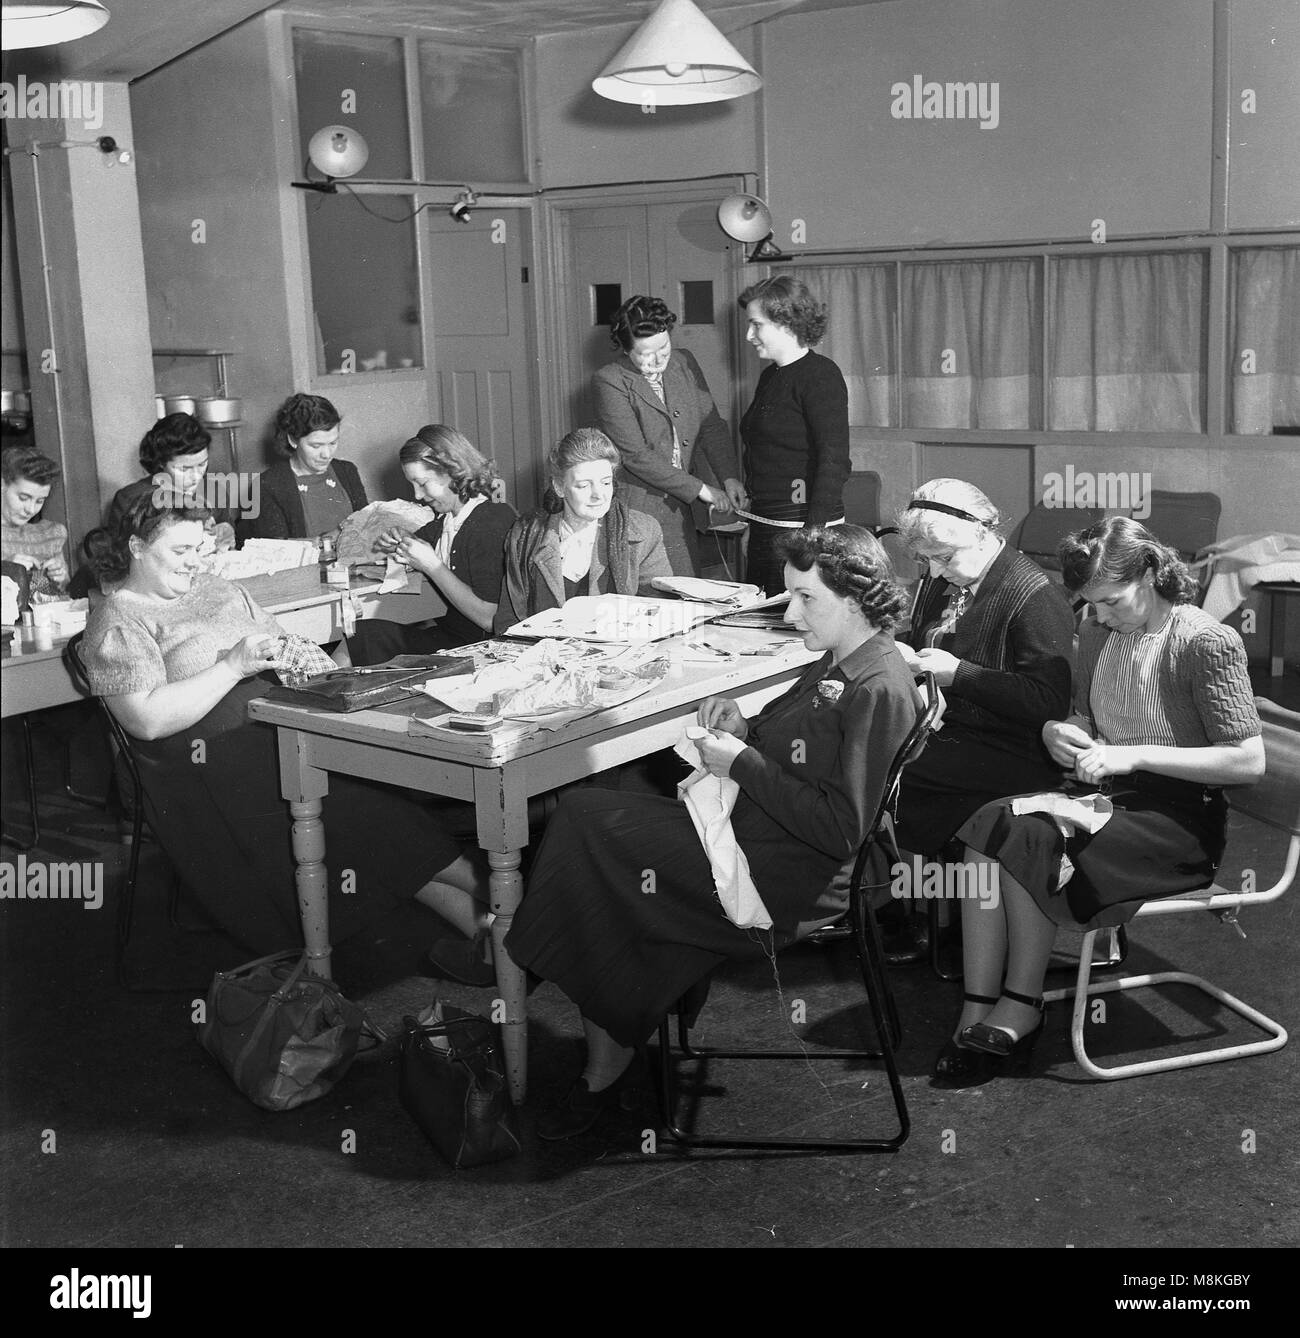 1950er Jahre, historische Bild von Damen an einer Nähmaschine oder Handarbeit Gruppe, England, UK während und nach dem Krieg, in Großbritannien, in ihrer eigenen Kleidung und andere Textilien, war ein beliebter weiblicher Aktivität, mit vielen Zeitschriften, Broschüren und Klassen zur Verfügung, um es zu fördern. Stockfoto